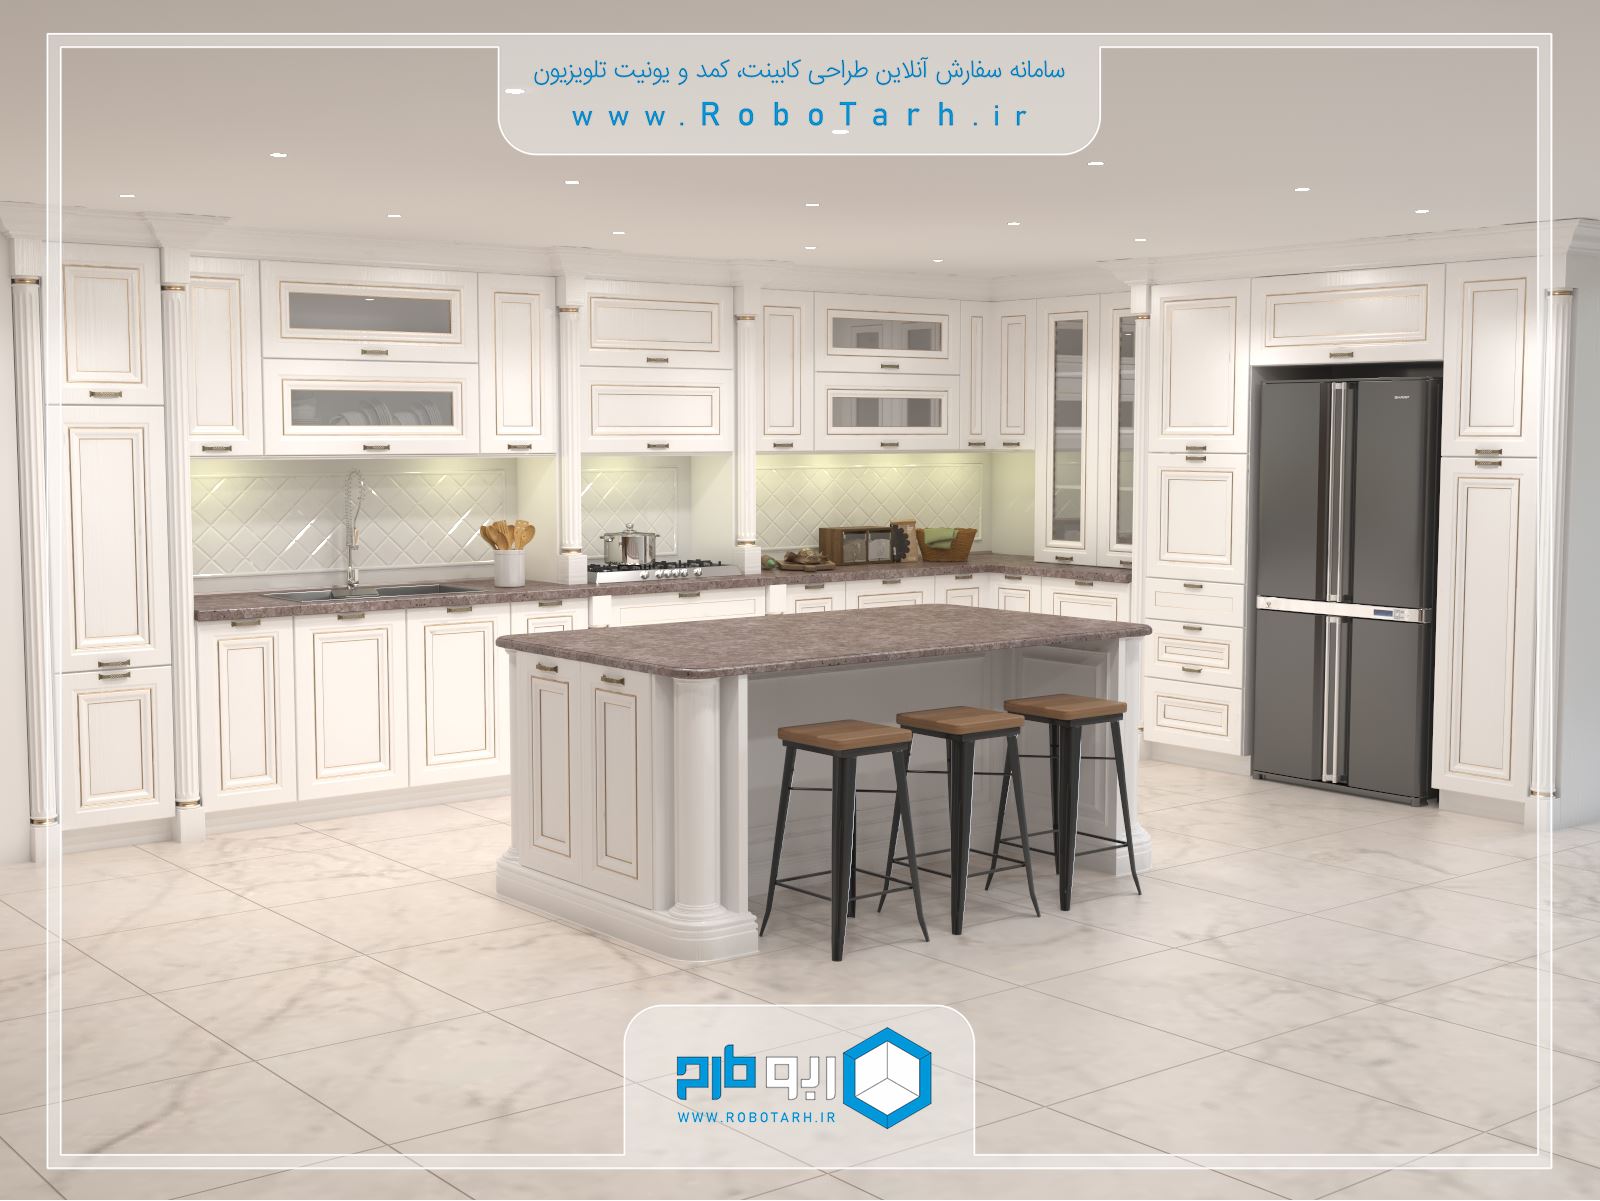 طراحی کابینت آشپزخانه کلاسیک (ممبران) سفید و طلایی با چیدمان ال شکل - ربوطرح